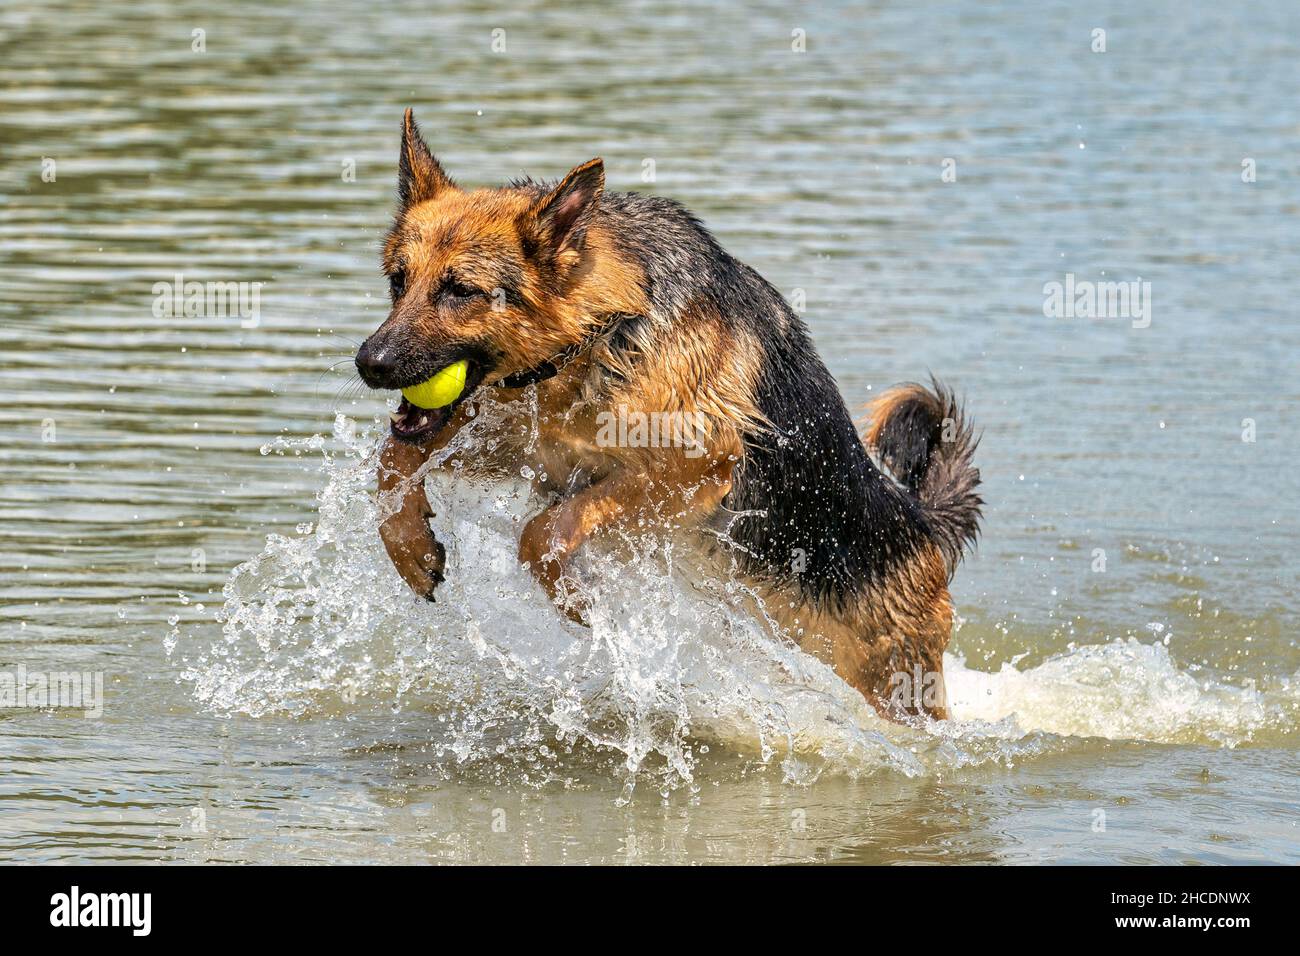 Giovane pastore tedesco felice, salta in acqua con grande spruzzi. Il cane spruzza e salta felicemente nel lago. Palla da tennis gialla in bocca Foto Stock